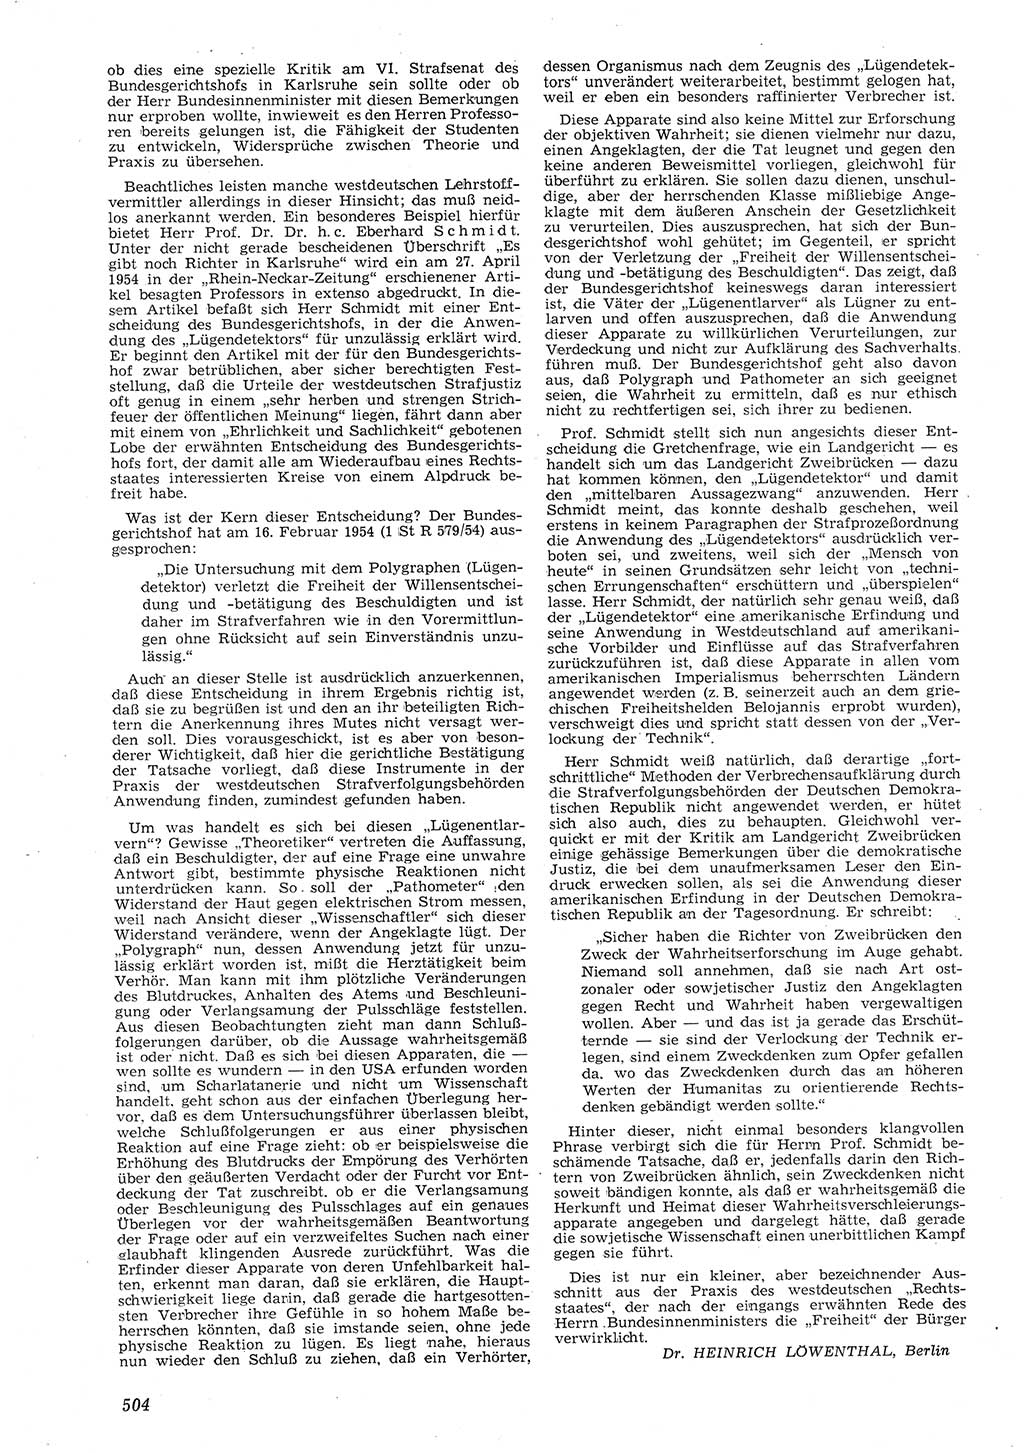 Neue Justiz (NJ), Zeitschrift für Recht und Rechtswissenschaft [Deutsche Demokratische Republik (DDR)], 8. Jahrgang 1954, Seite 504 (NJ DDR 1954, S. 504)